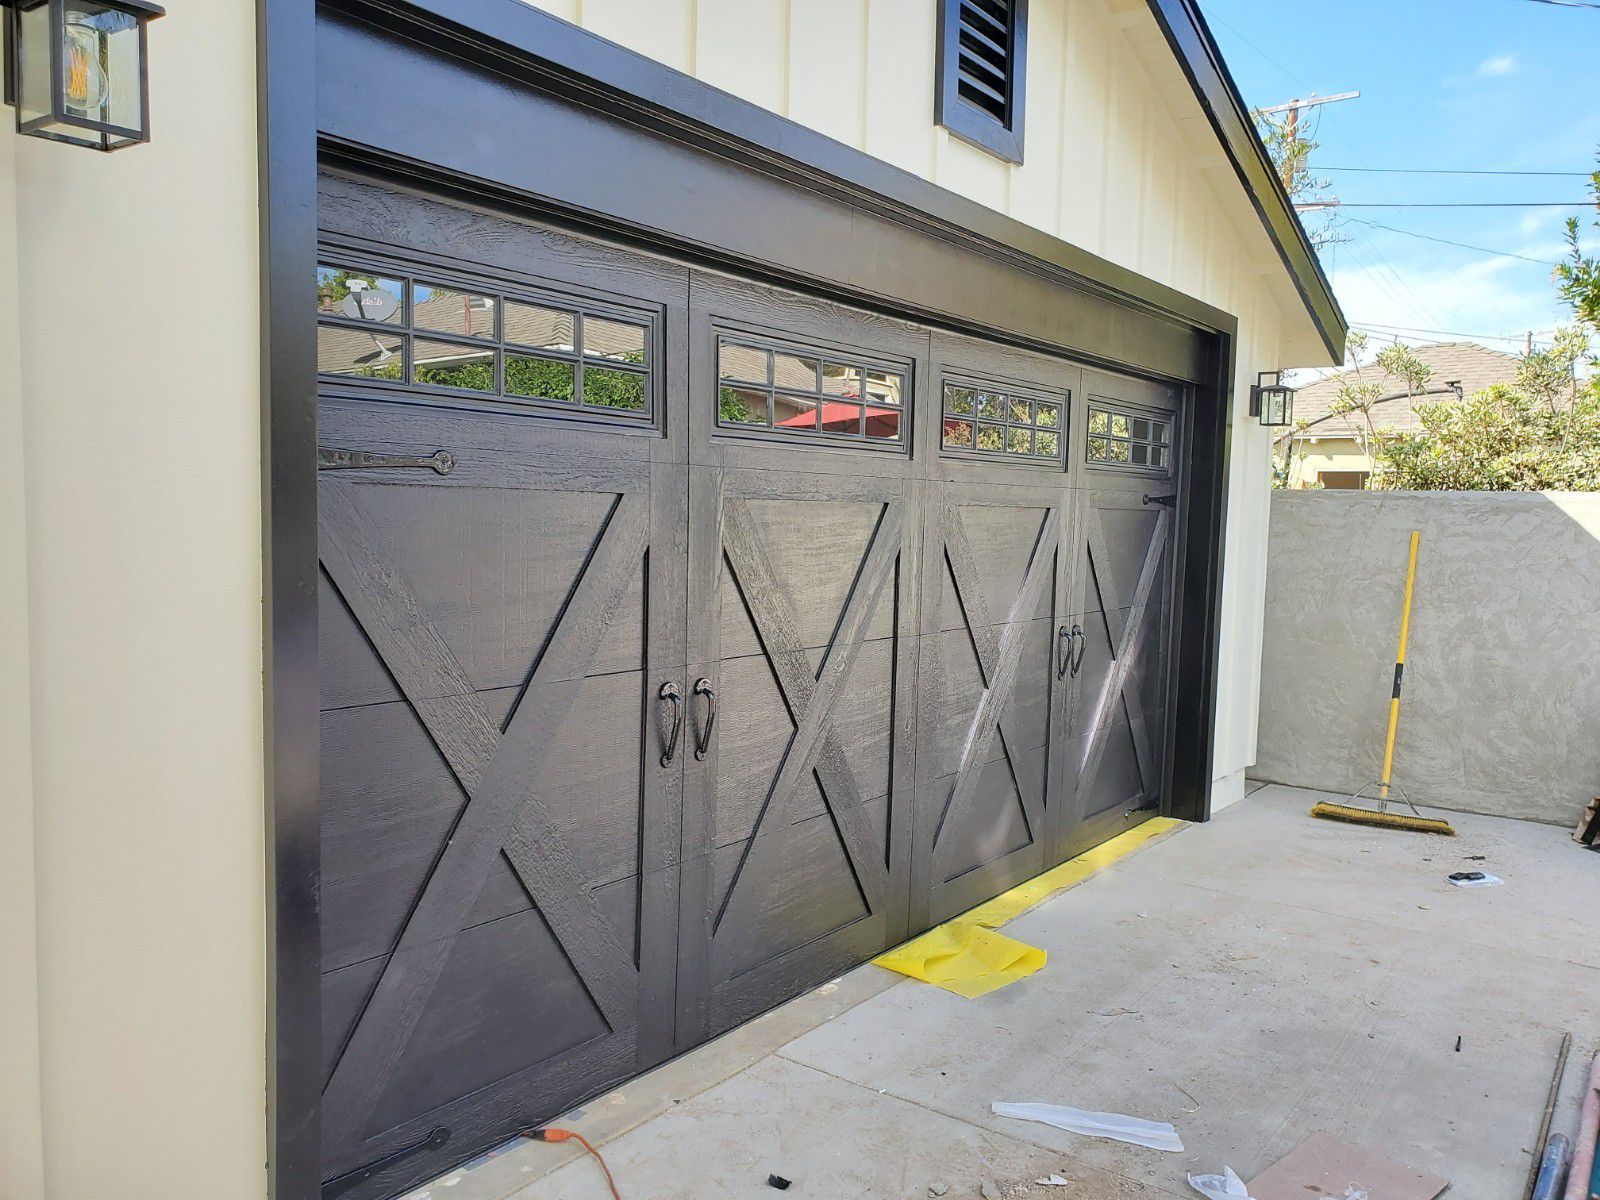 Garage doors